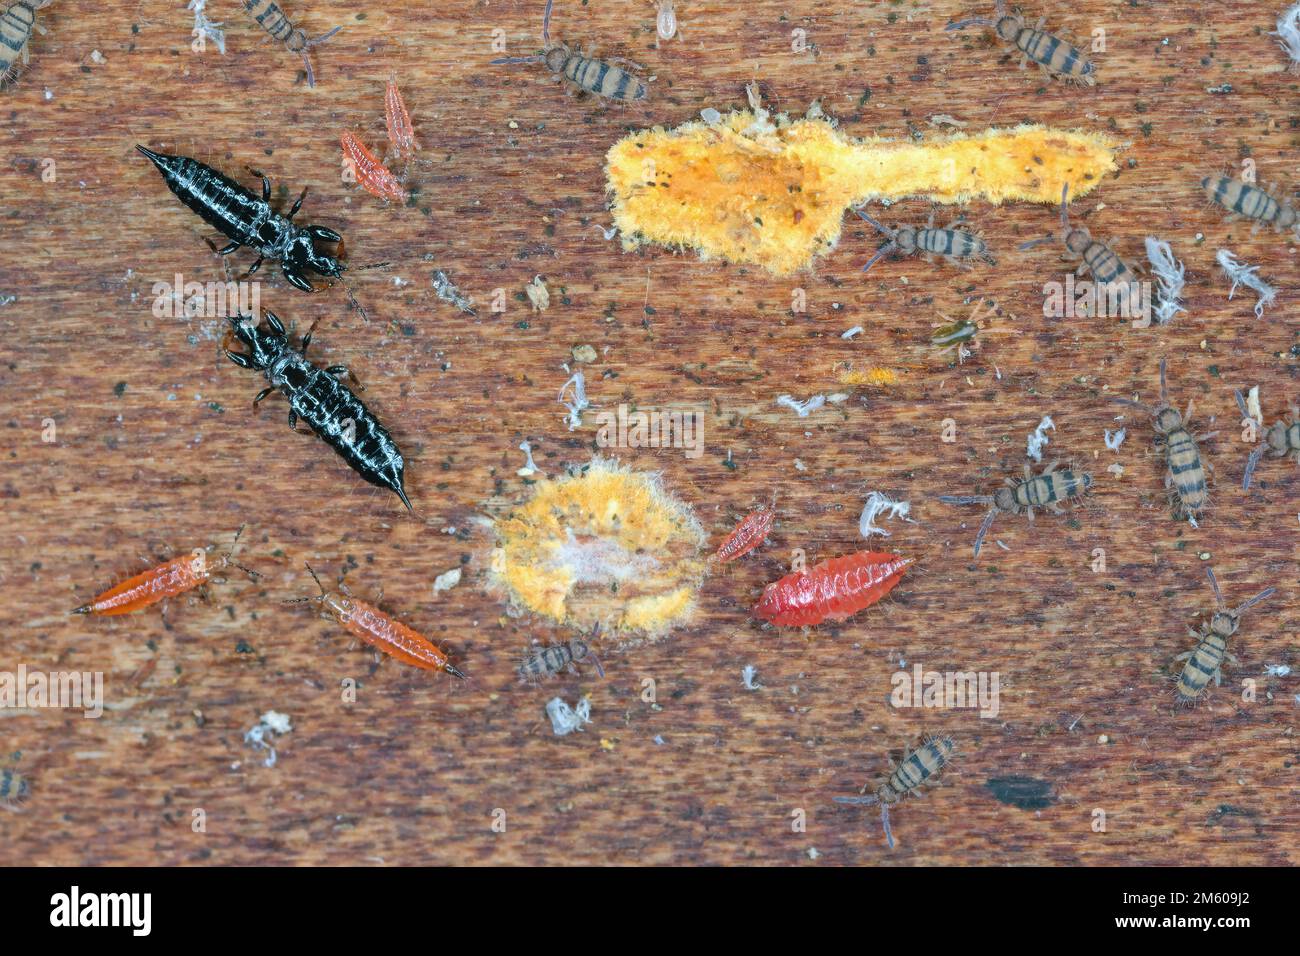 Les rebondies et les thrips, les adultes noirs et les nymphes rouges se nourrissant du mycélium sous l'écorce d'un arbre mort. Banque D'Images